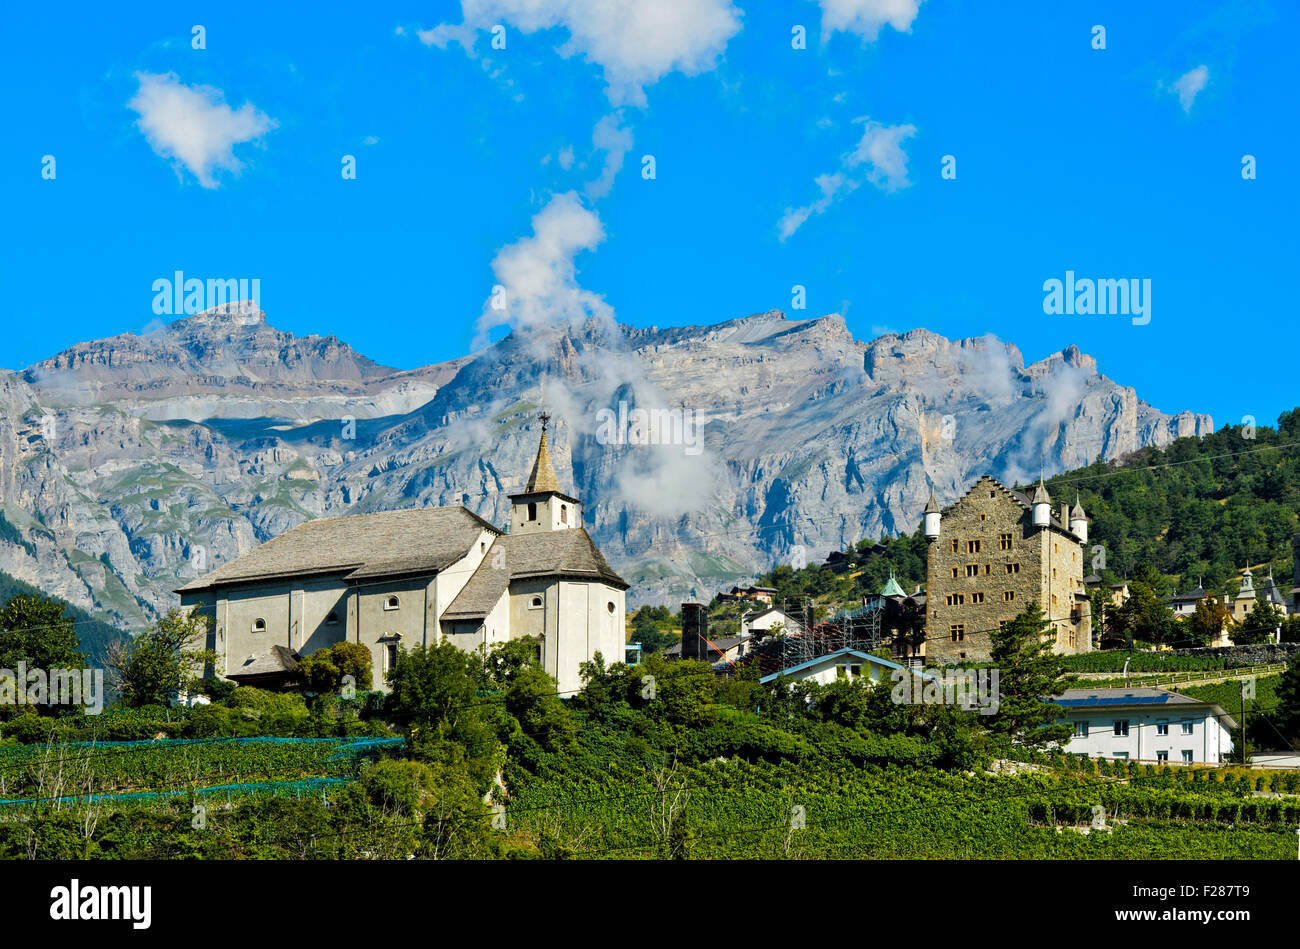 Ringacker chapelle et l'hôtel de ville au pied des Alpes Bernoises, Loèche, Canton du Valais, Suisse Banque D'Images